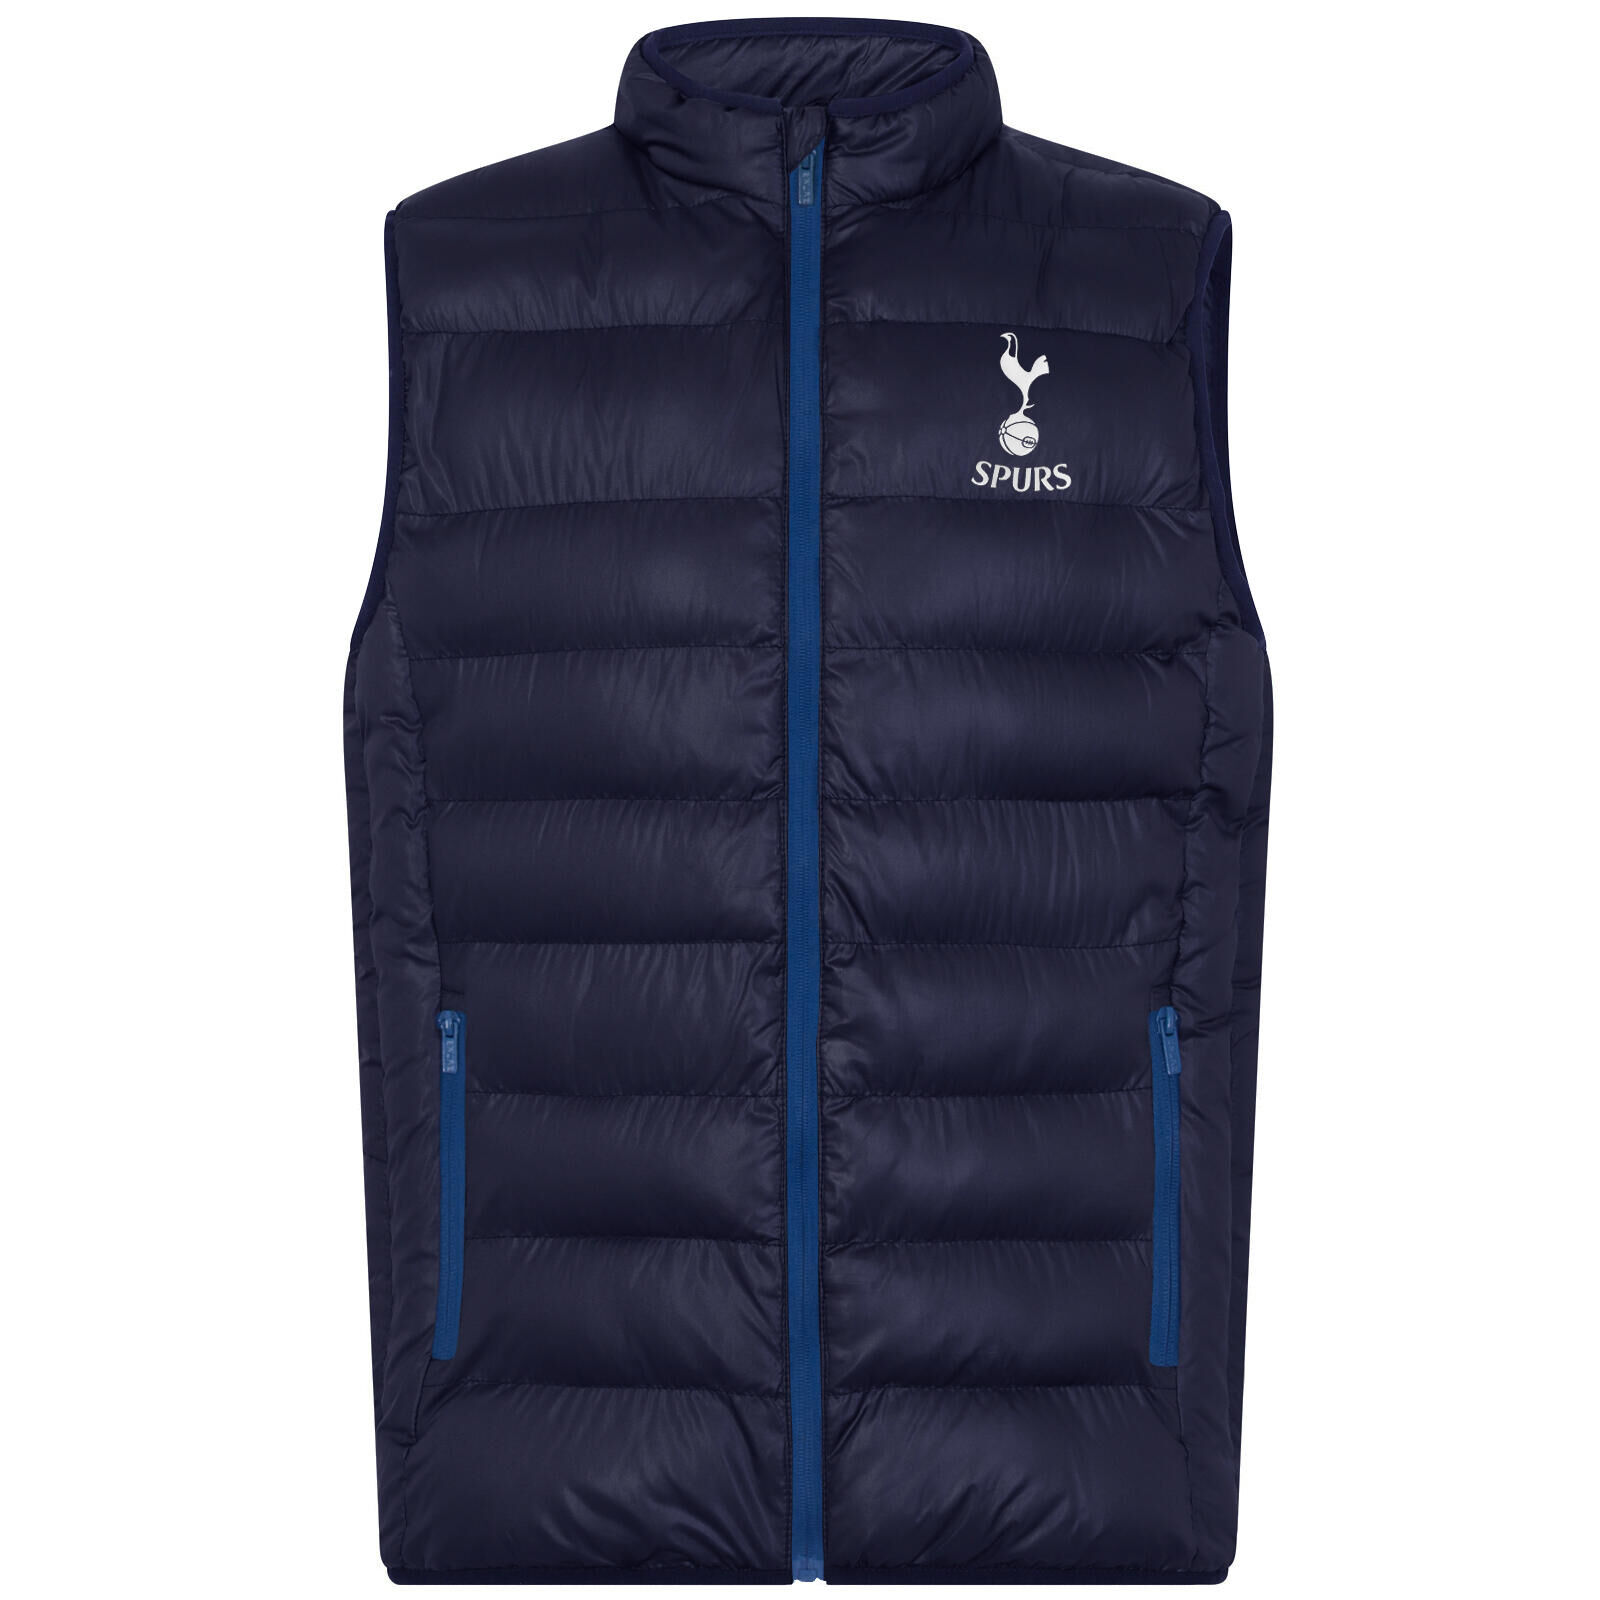 TOTTENHAM HOTSPUR Tottenham Hotspur Mens Gilet Jacket Body Warmer Padded OFFICIAL Football Gift